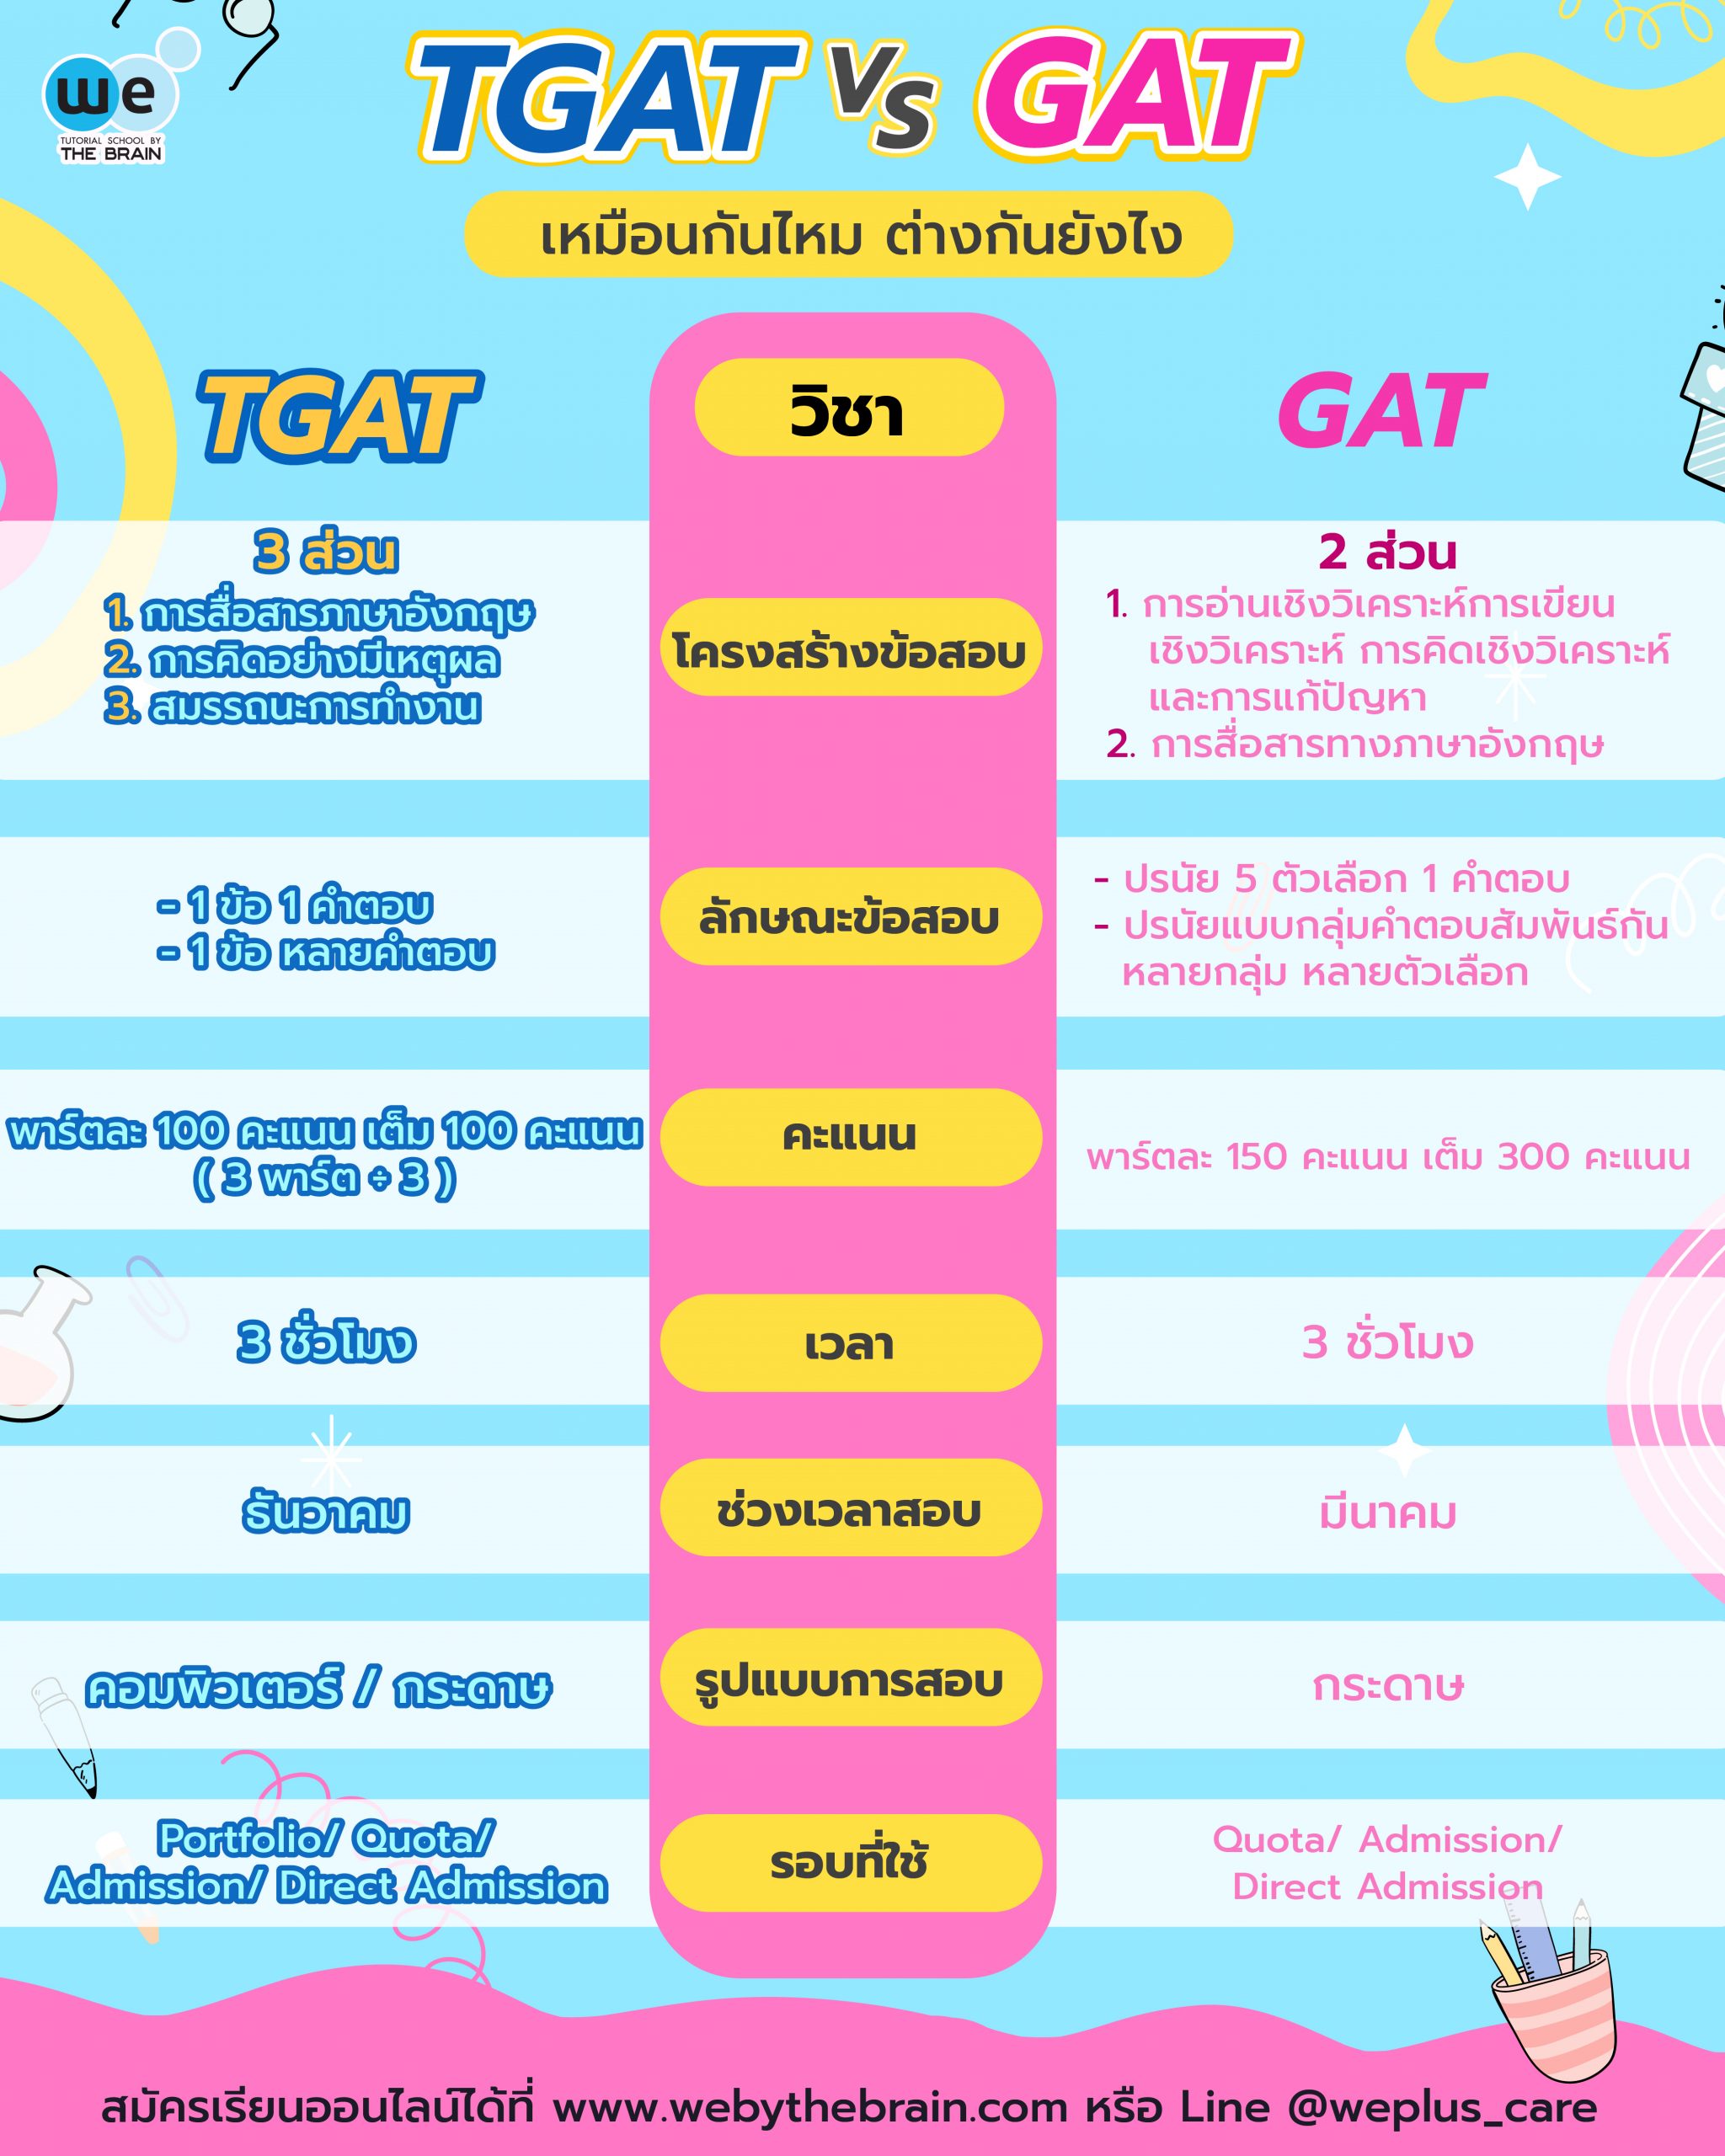 TGAT vs GAT